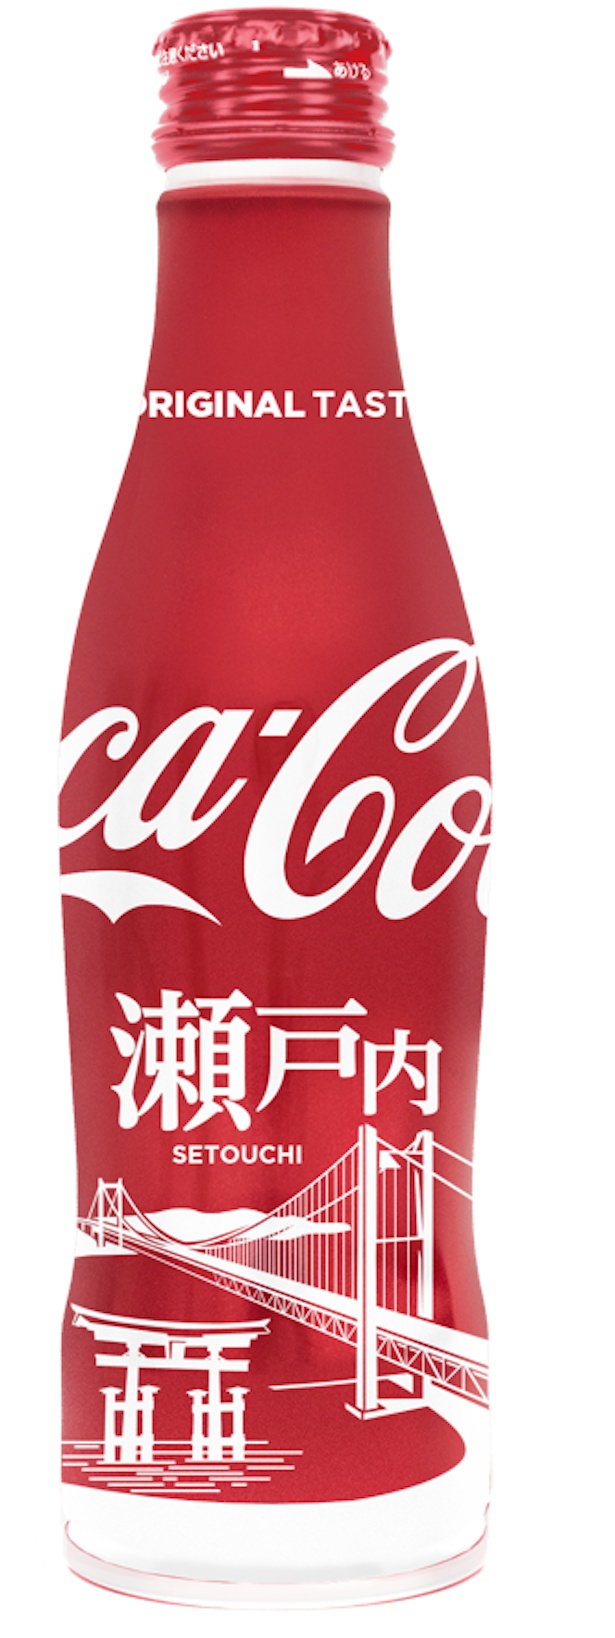 コカ コーラに地域デザイン登場 地域限定ボトル発売 ウォーカープラス